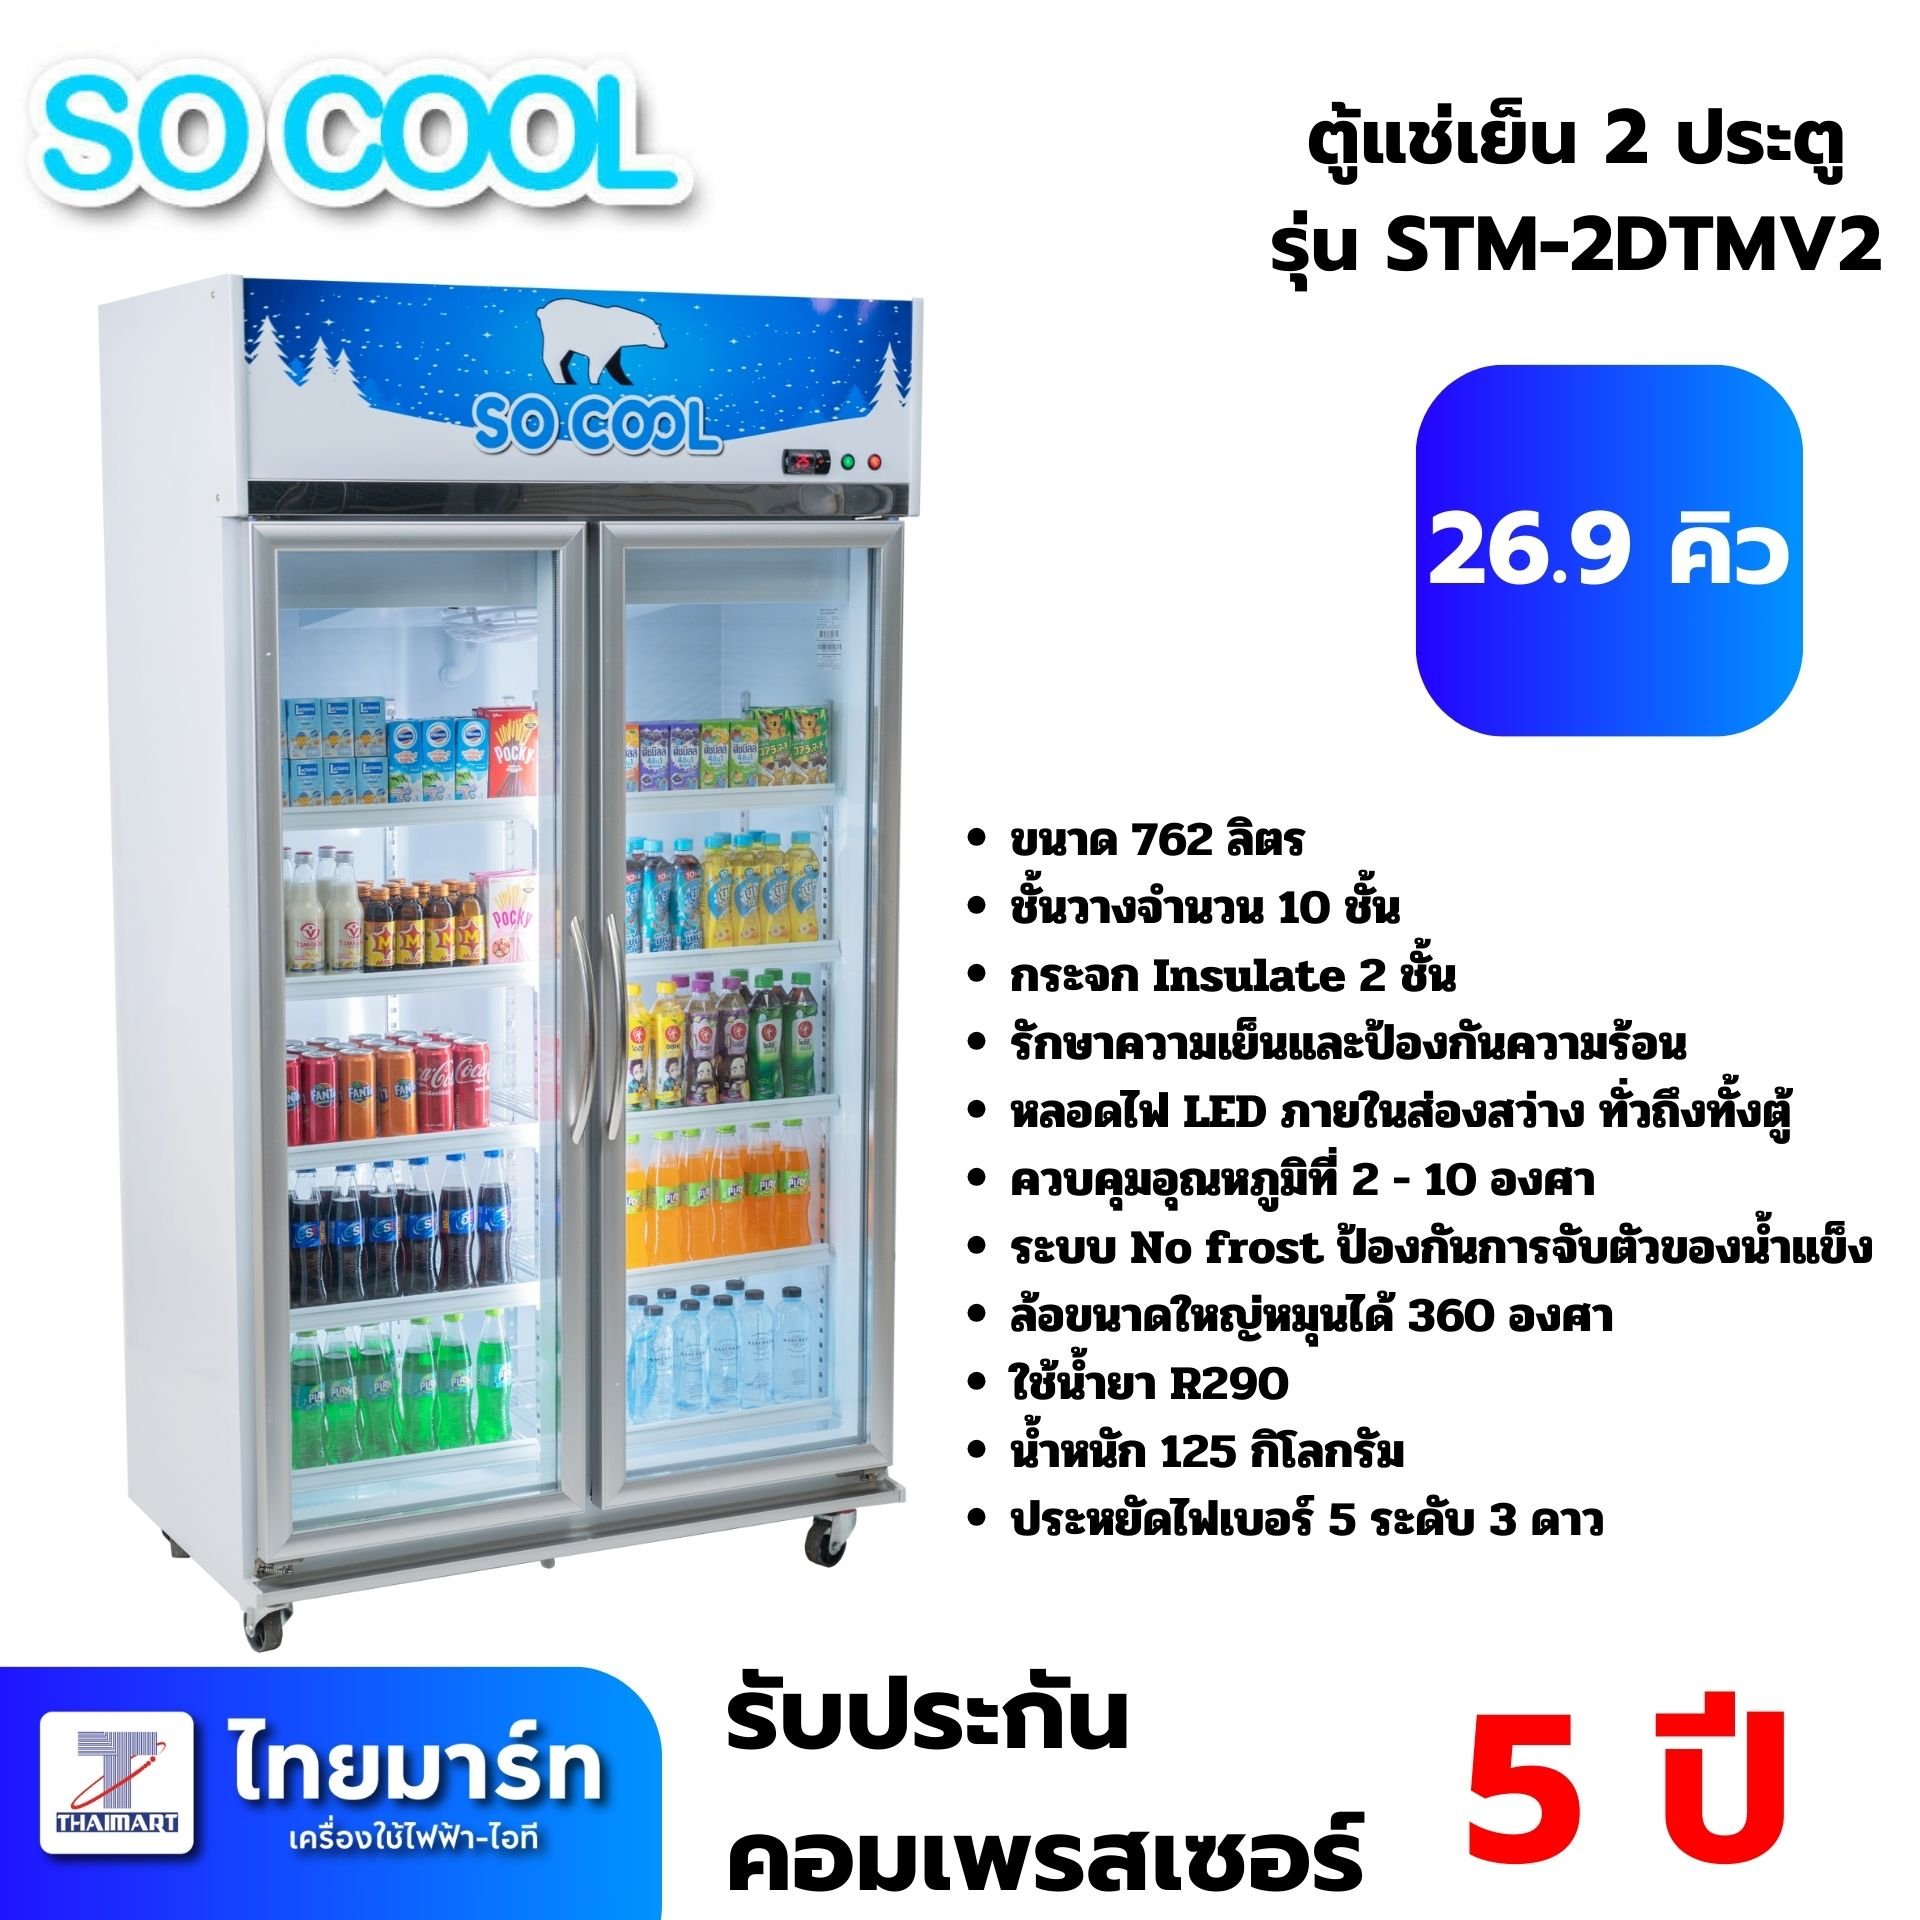 SOCOOL ตู้แช่เย็น 2 ประตู 26.9 คิว รุ่น STM-2DTMV2